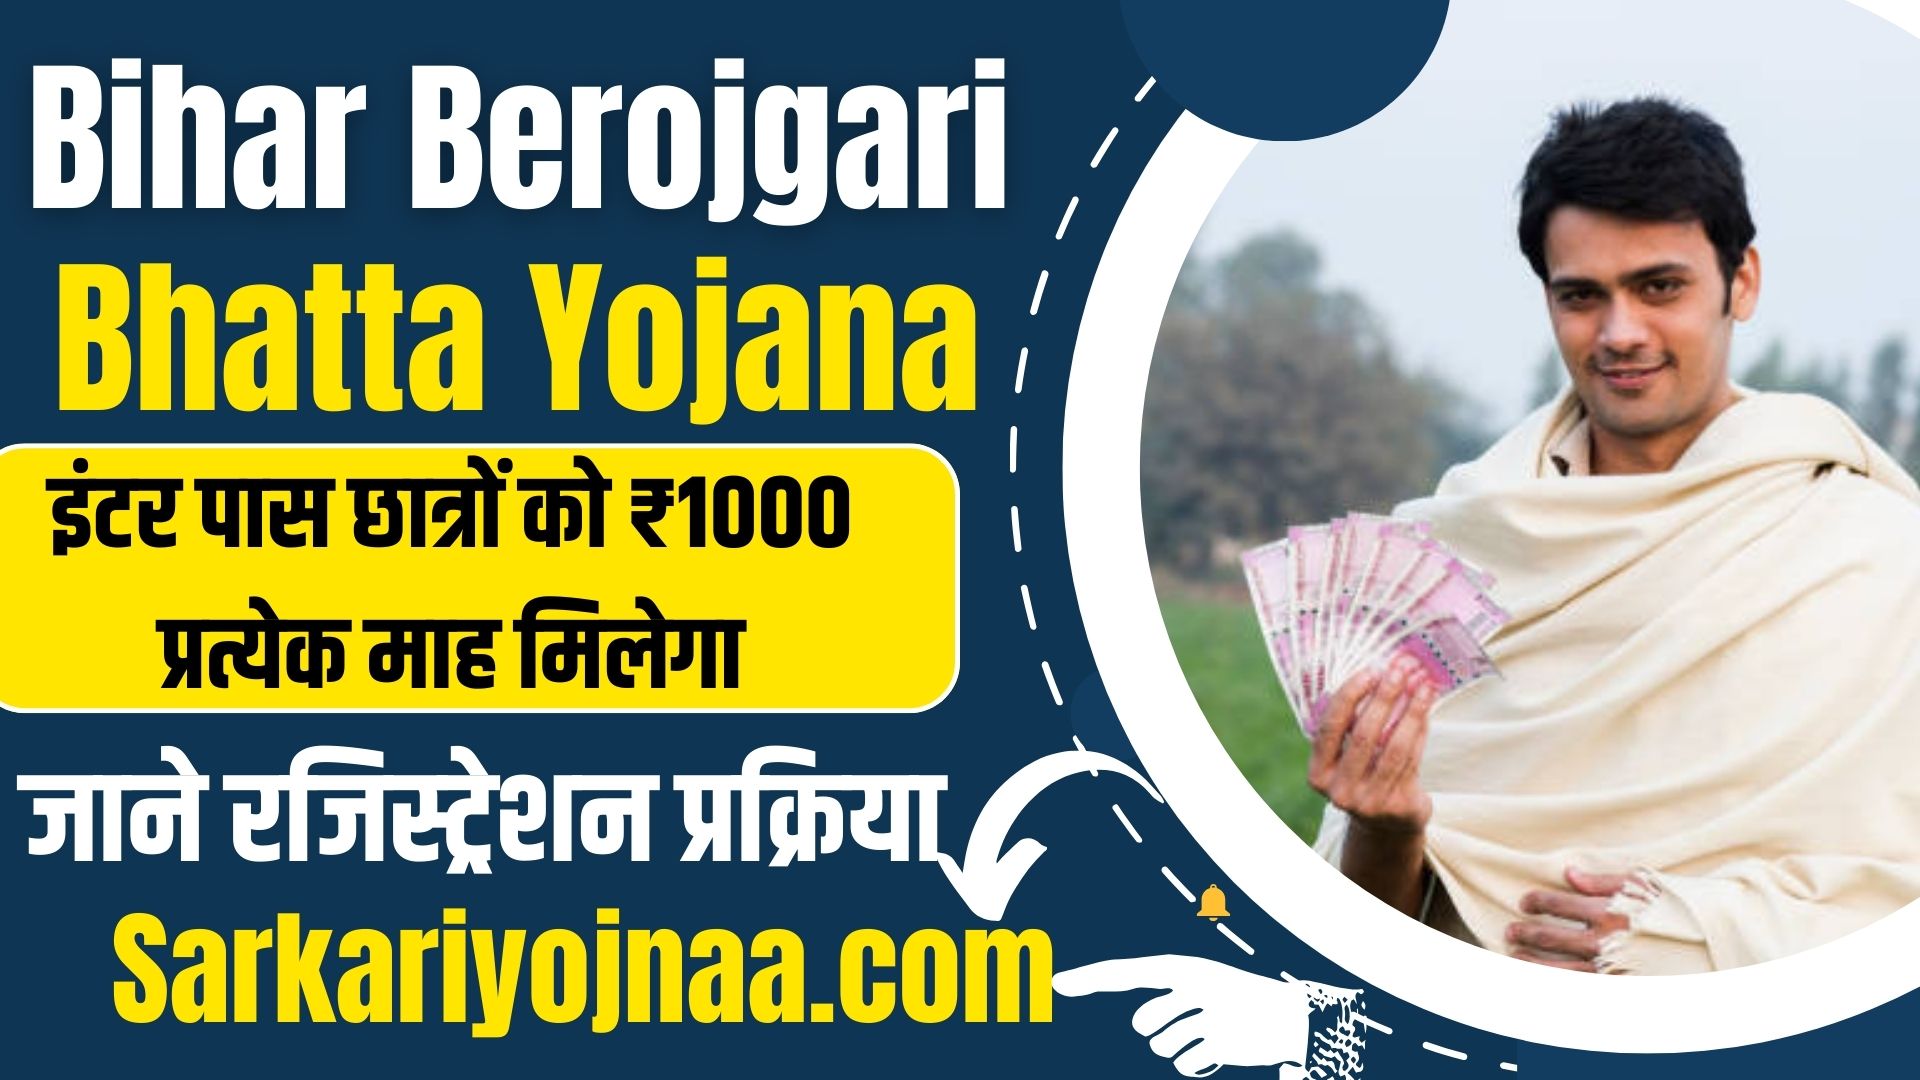 Bihar Berojgari Bhatta Yojana 2024